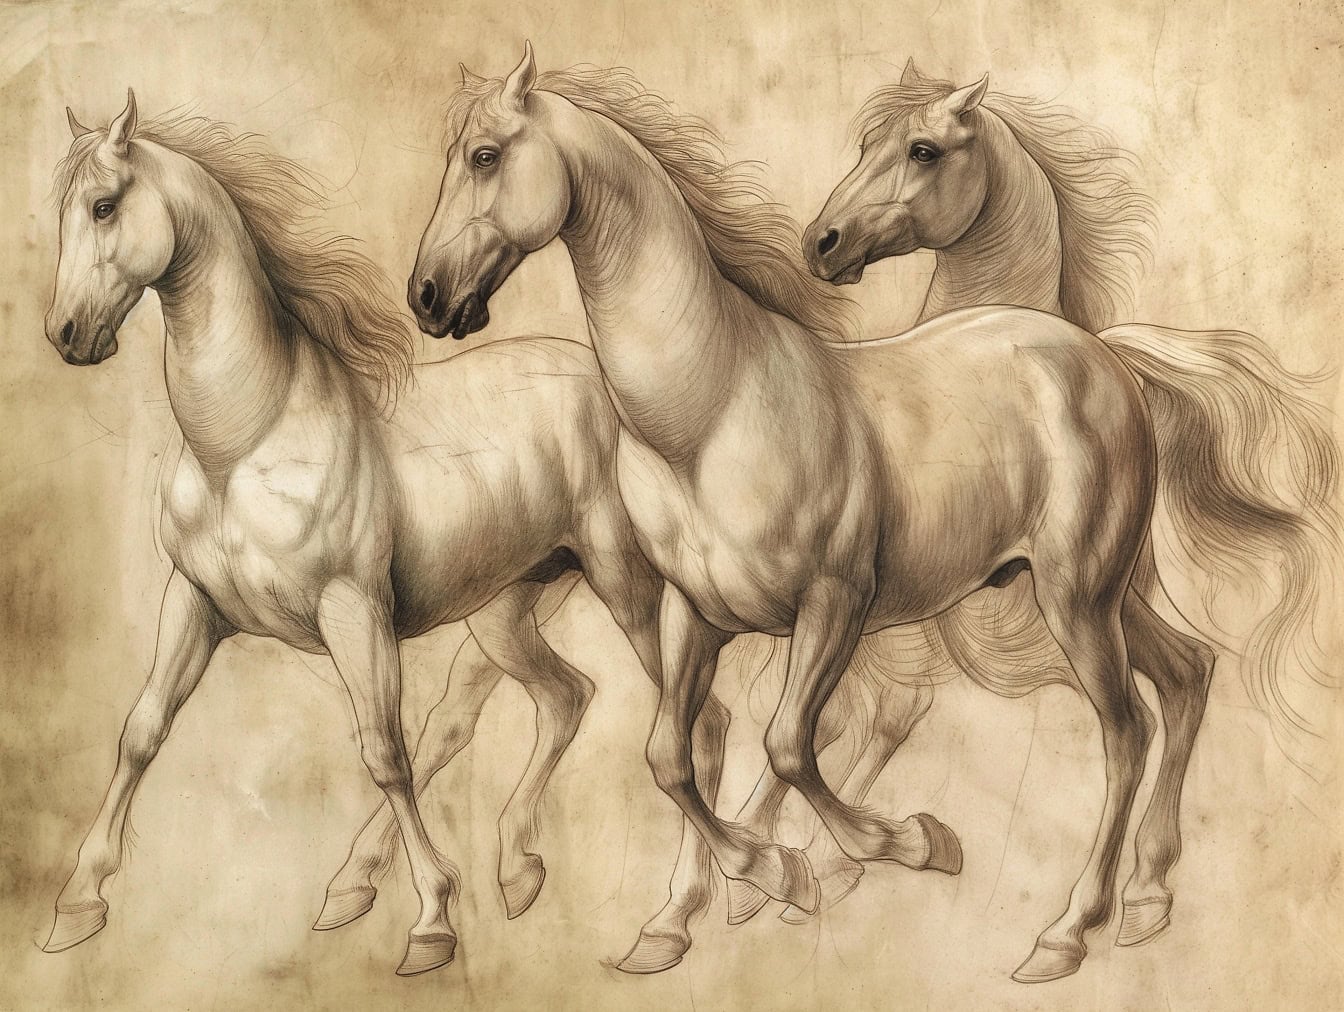 Käsin piirretty kolme hevosta, joilla on pitkä harja laukassa, luonnos vanhalle haalistuneelle kellertävälle paperille